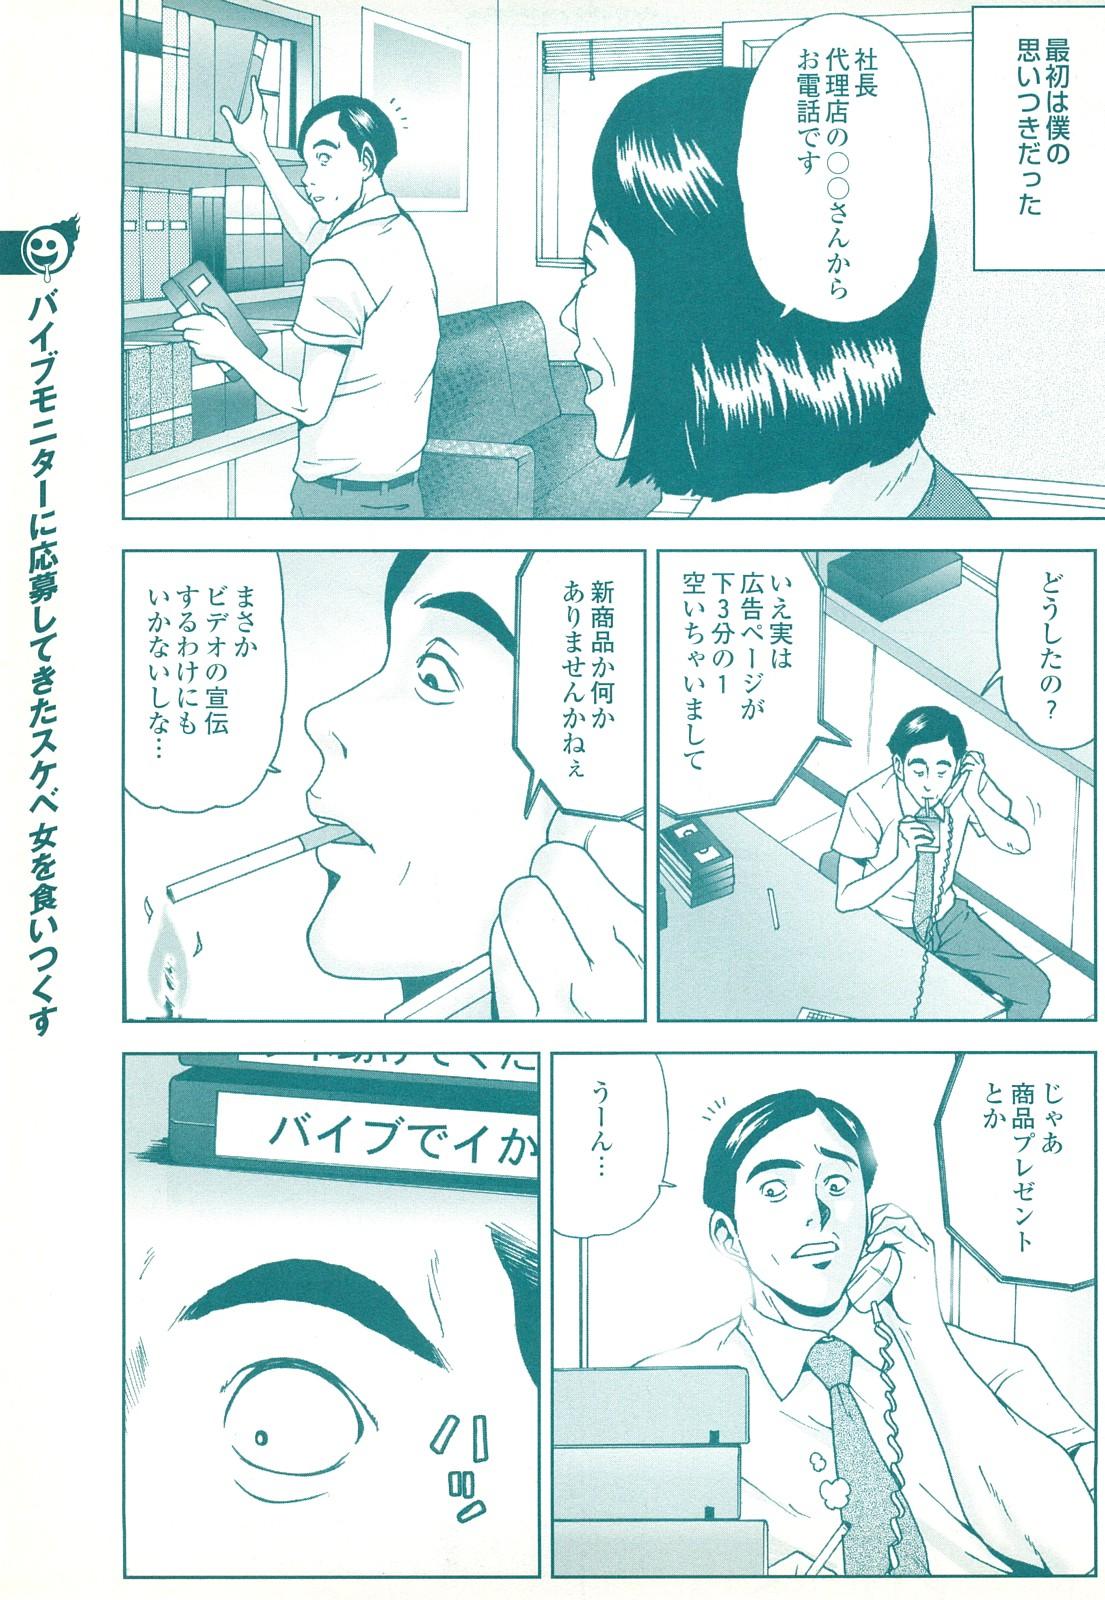 コミック裏モノJAPAN Vol.18 今井のりたつスペシャル号 164